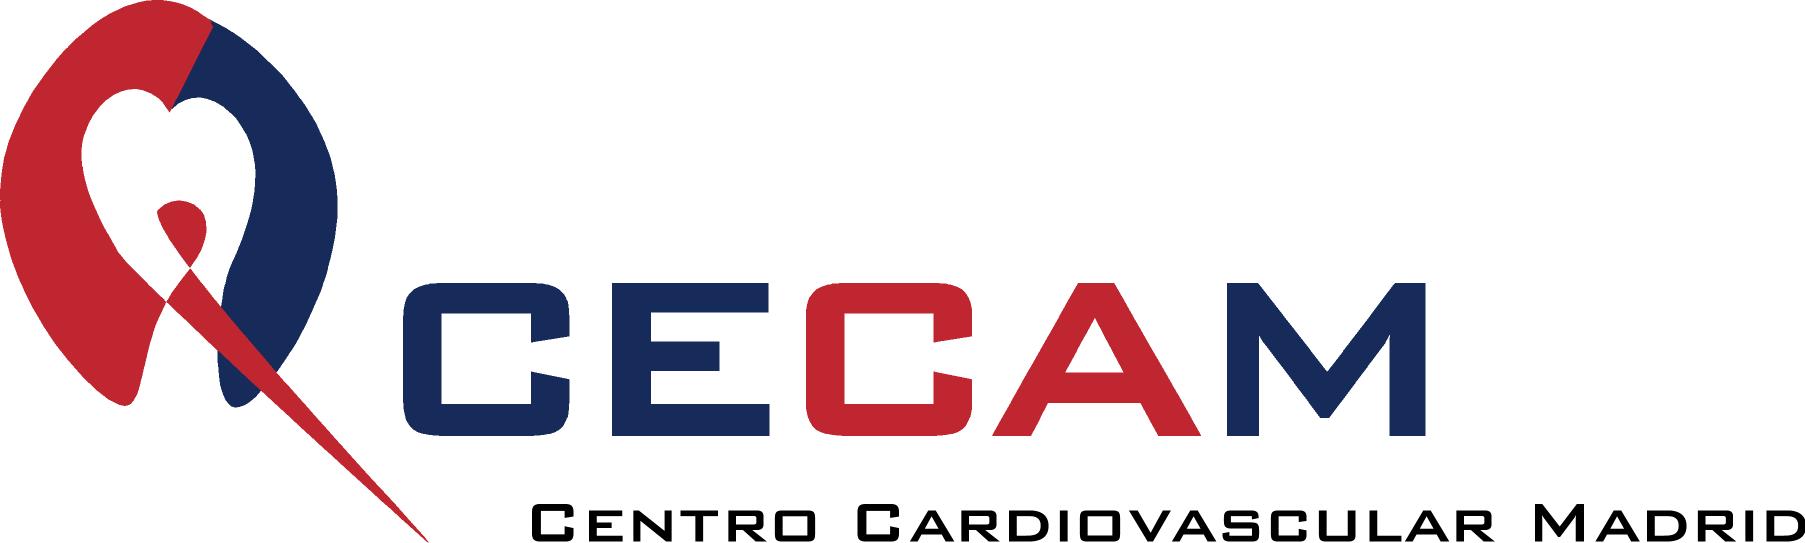 Logotipo de la clínica CARDIOLOGIA HOSPITAL SAN RAFAEL - CECAM 